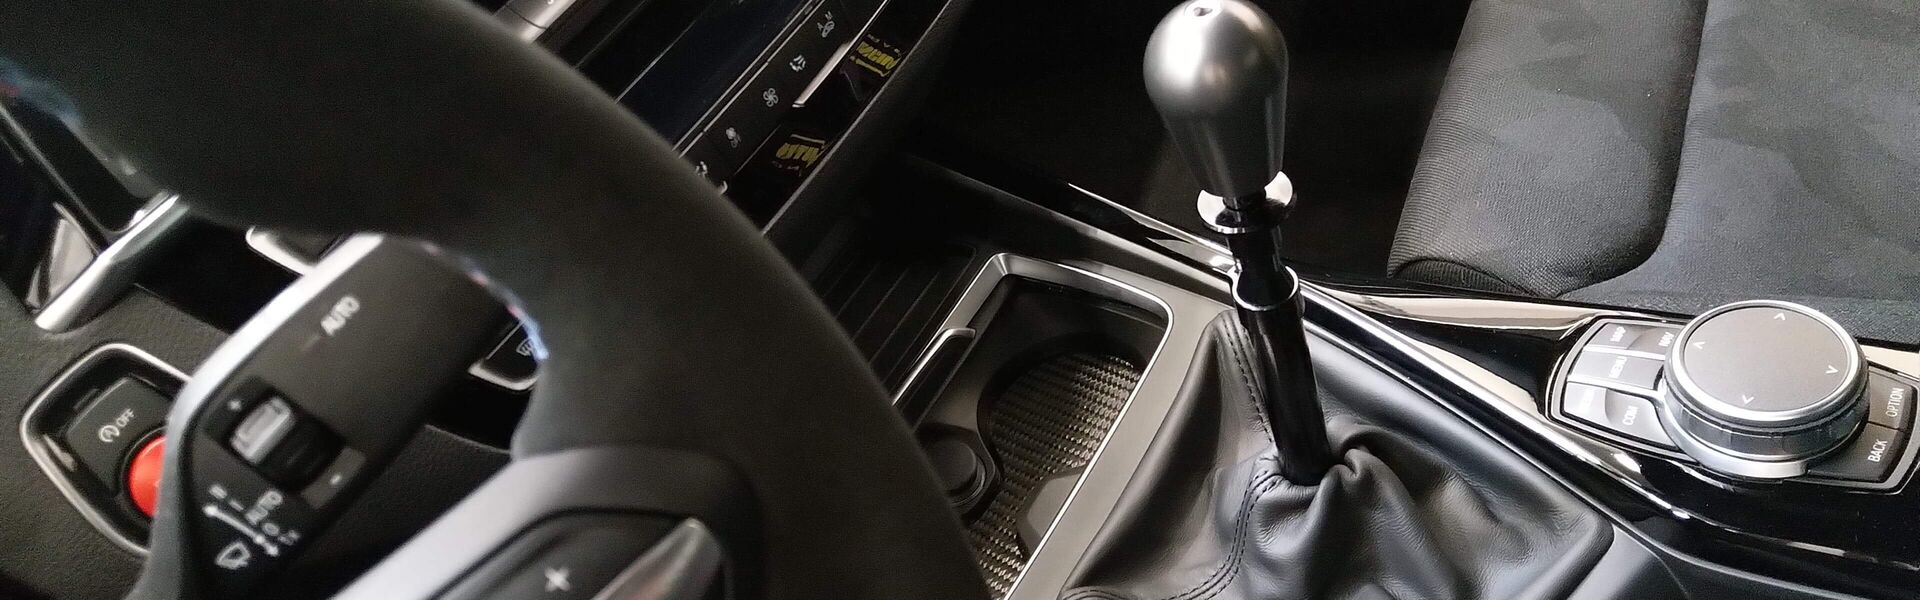 Převodovka/Řazení  pro automobil BMW 435i F32